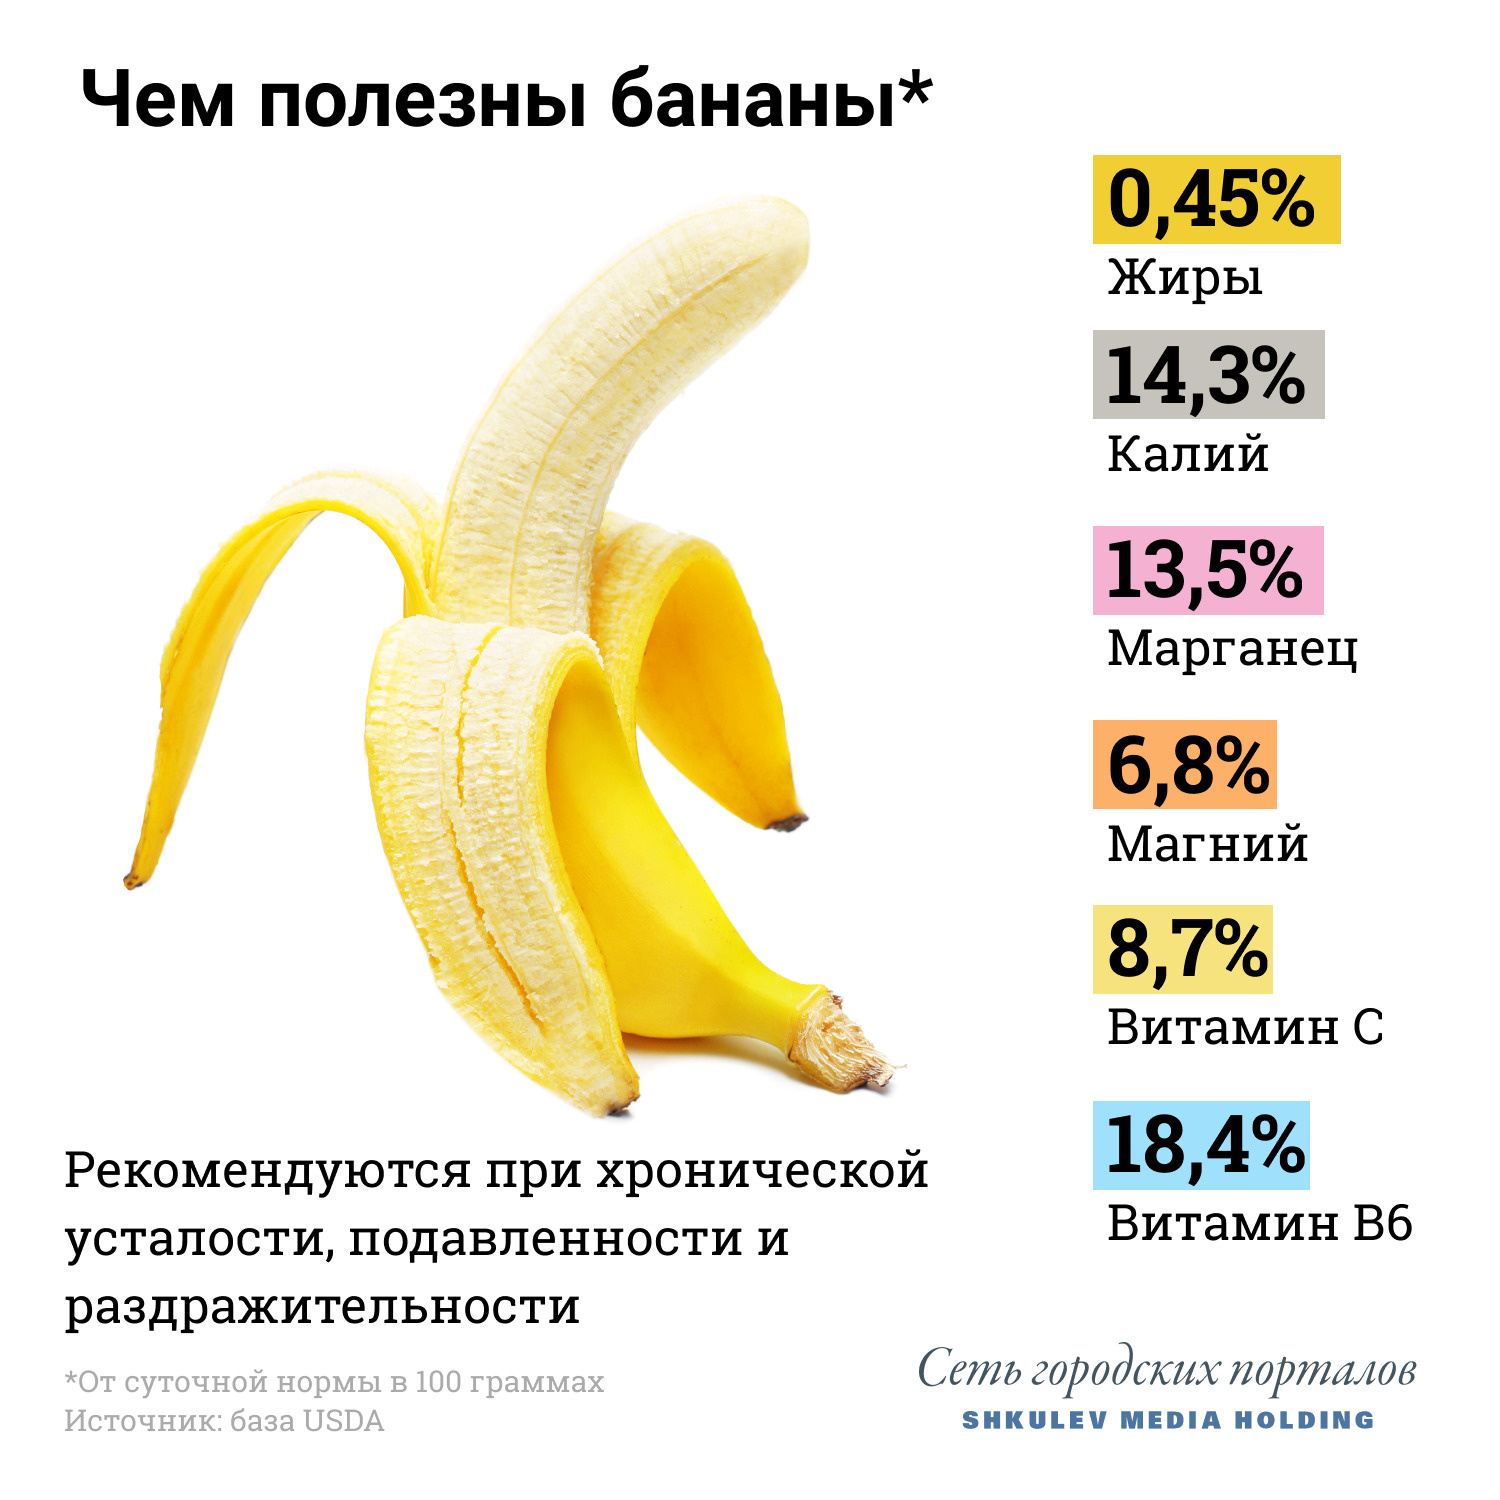 Если не хотите набрать лишний вес, съедайте не больше одного банана в день